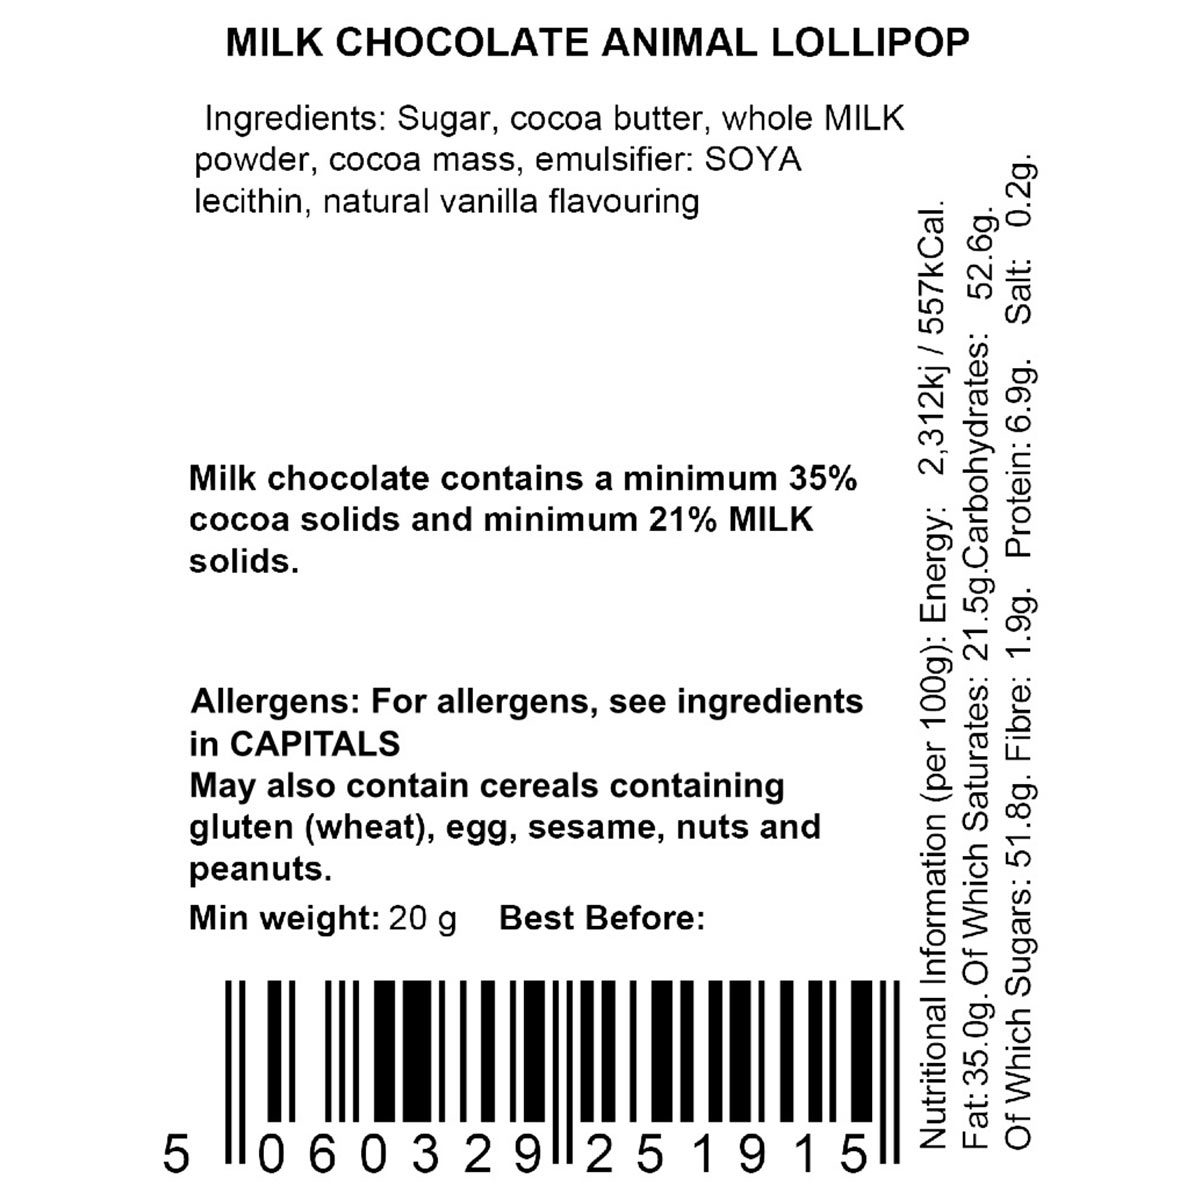 Nutritional information back label